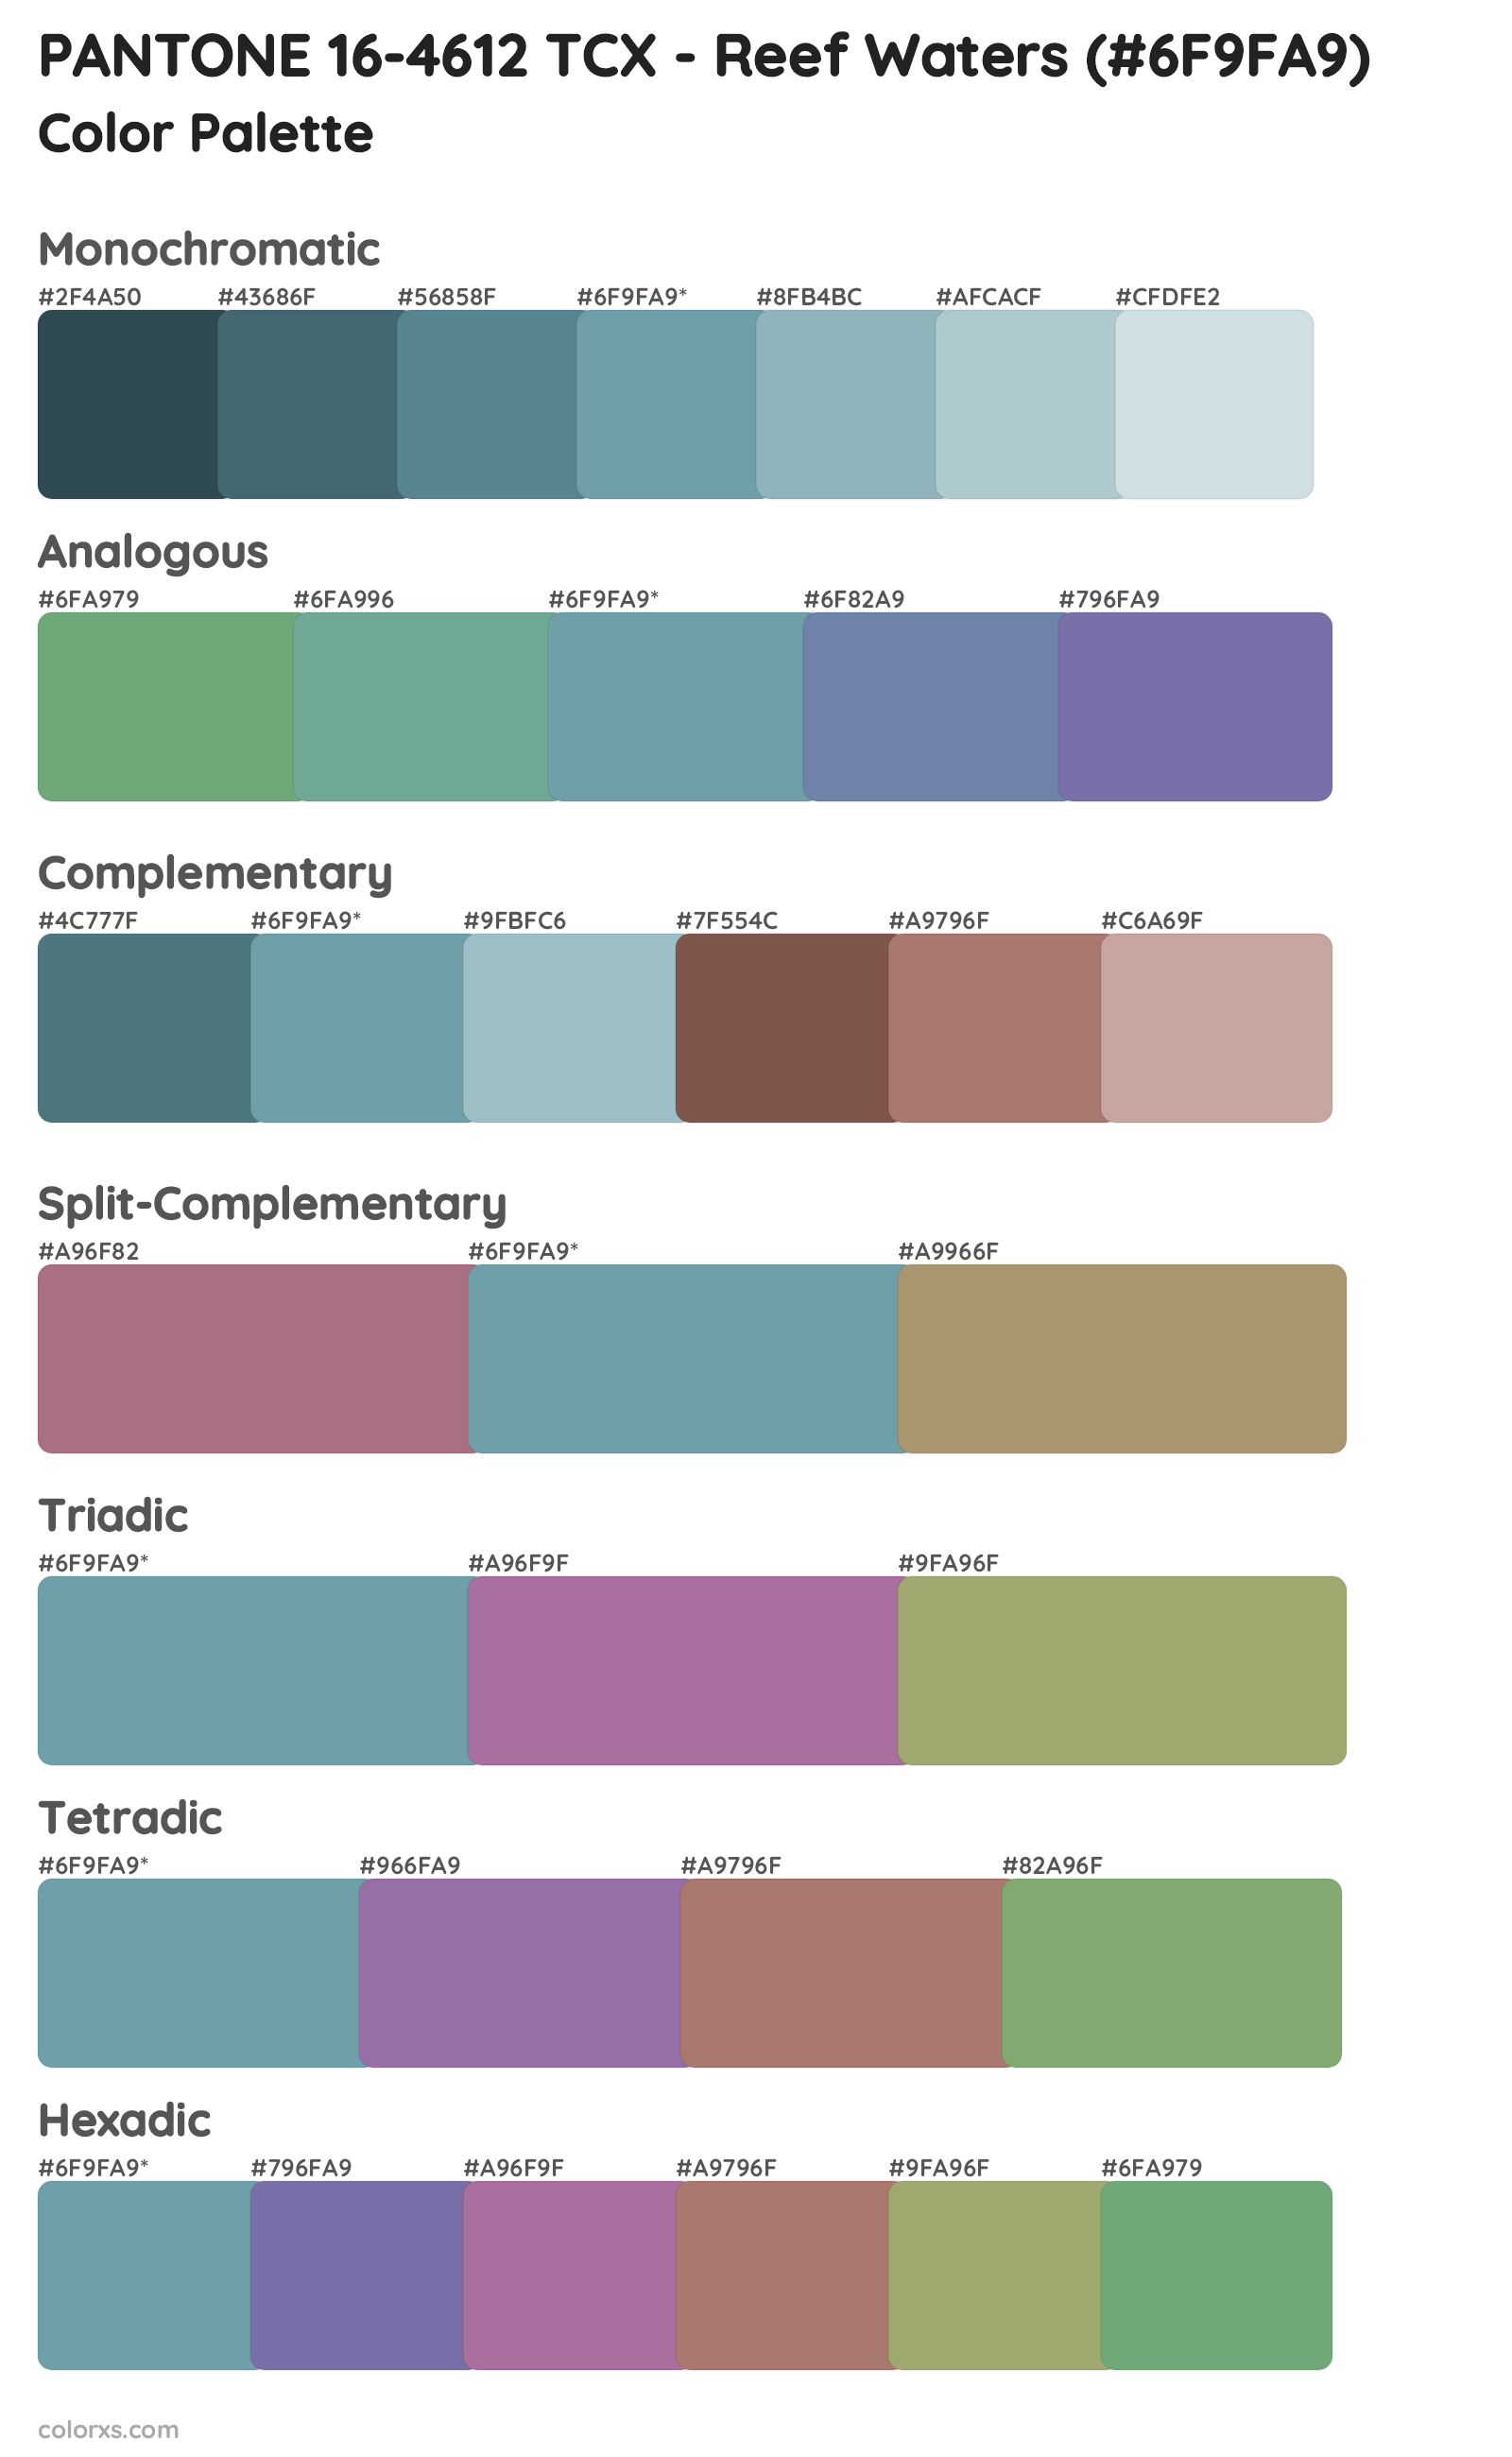 PANTONE 16-4612 TCX - Reef Waters Color Scheme Palettes